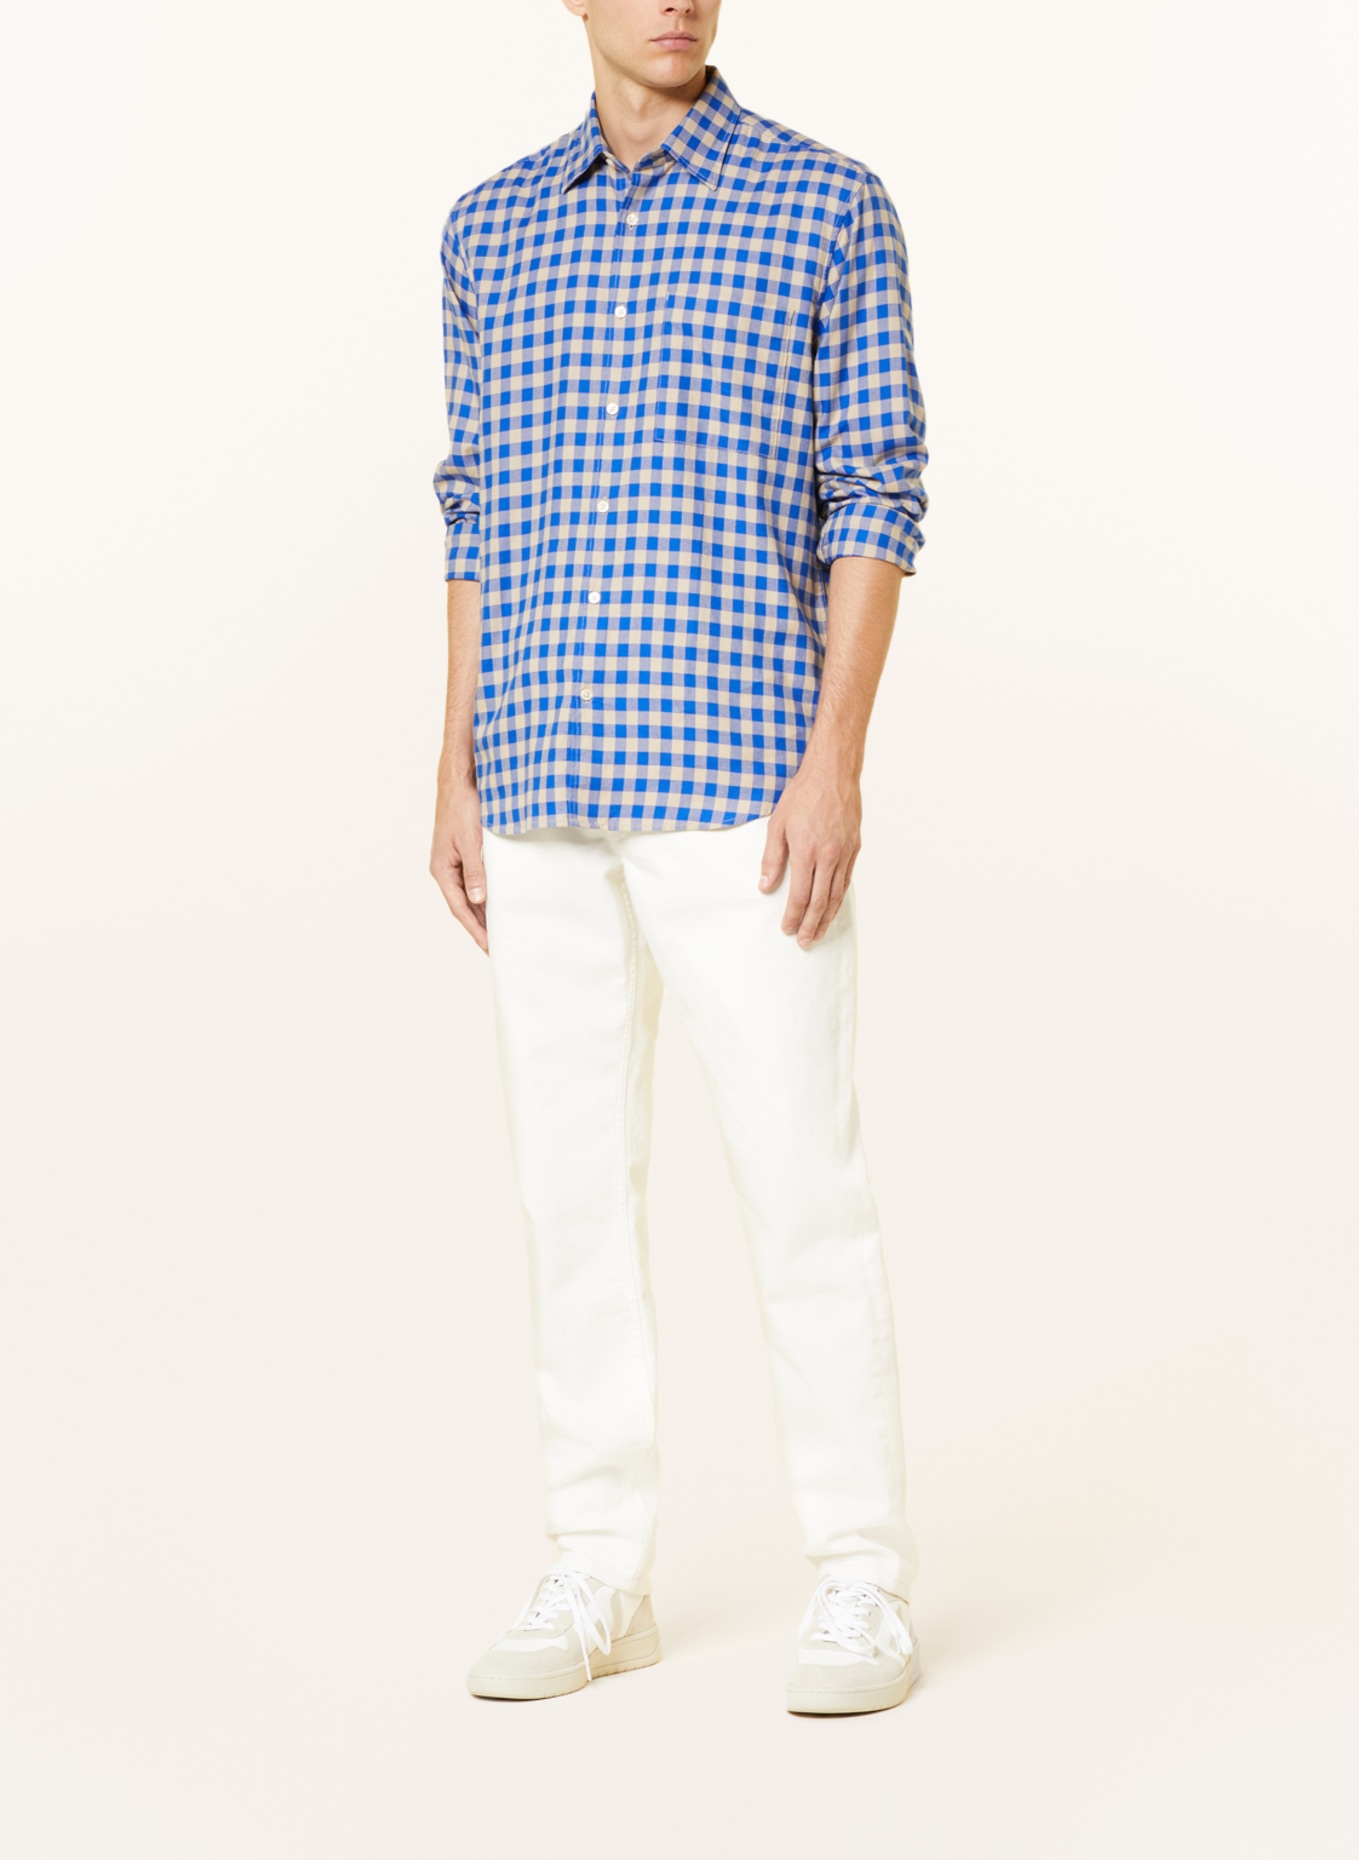 Marc O'Polo Shirt regular fit, Color: BLUE/ CREAM (Image 2)